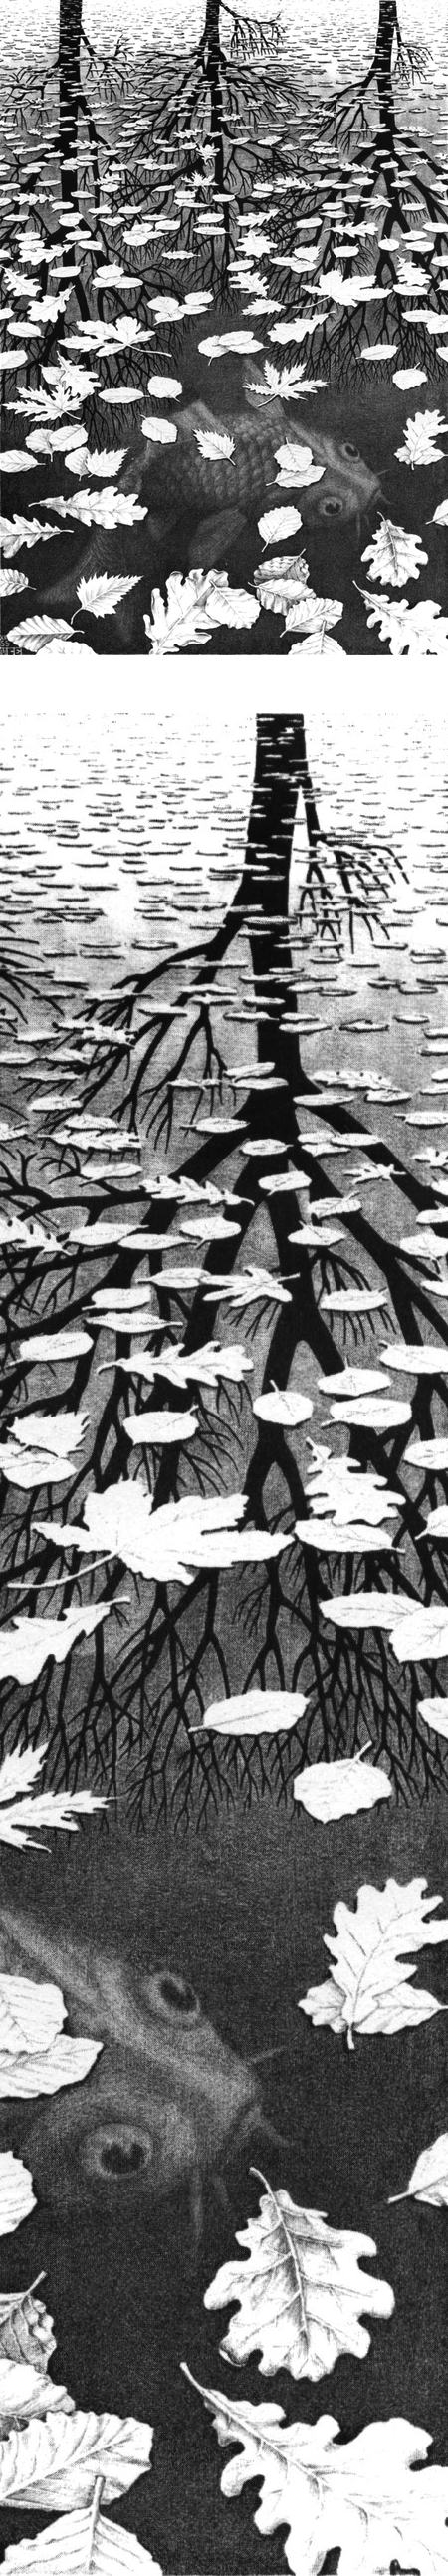 Three Worlds, M.C. Escher